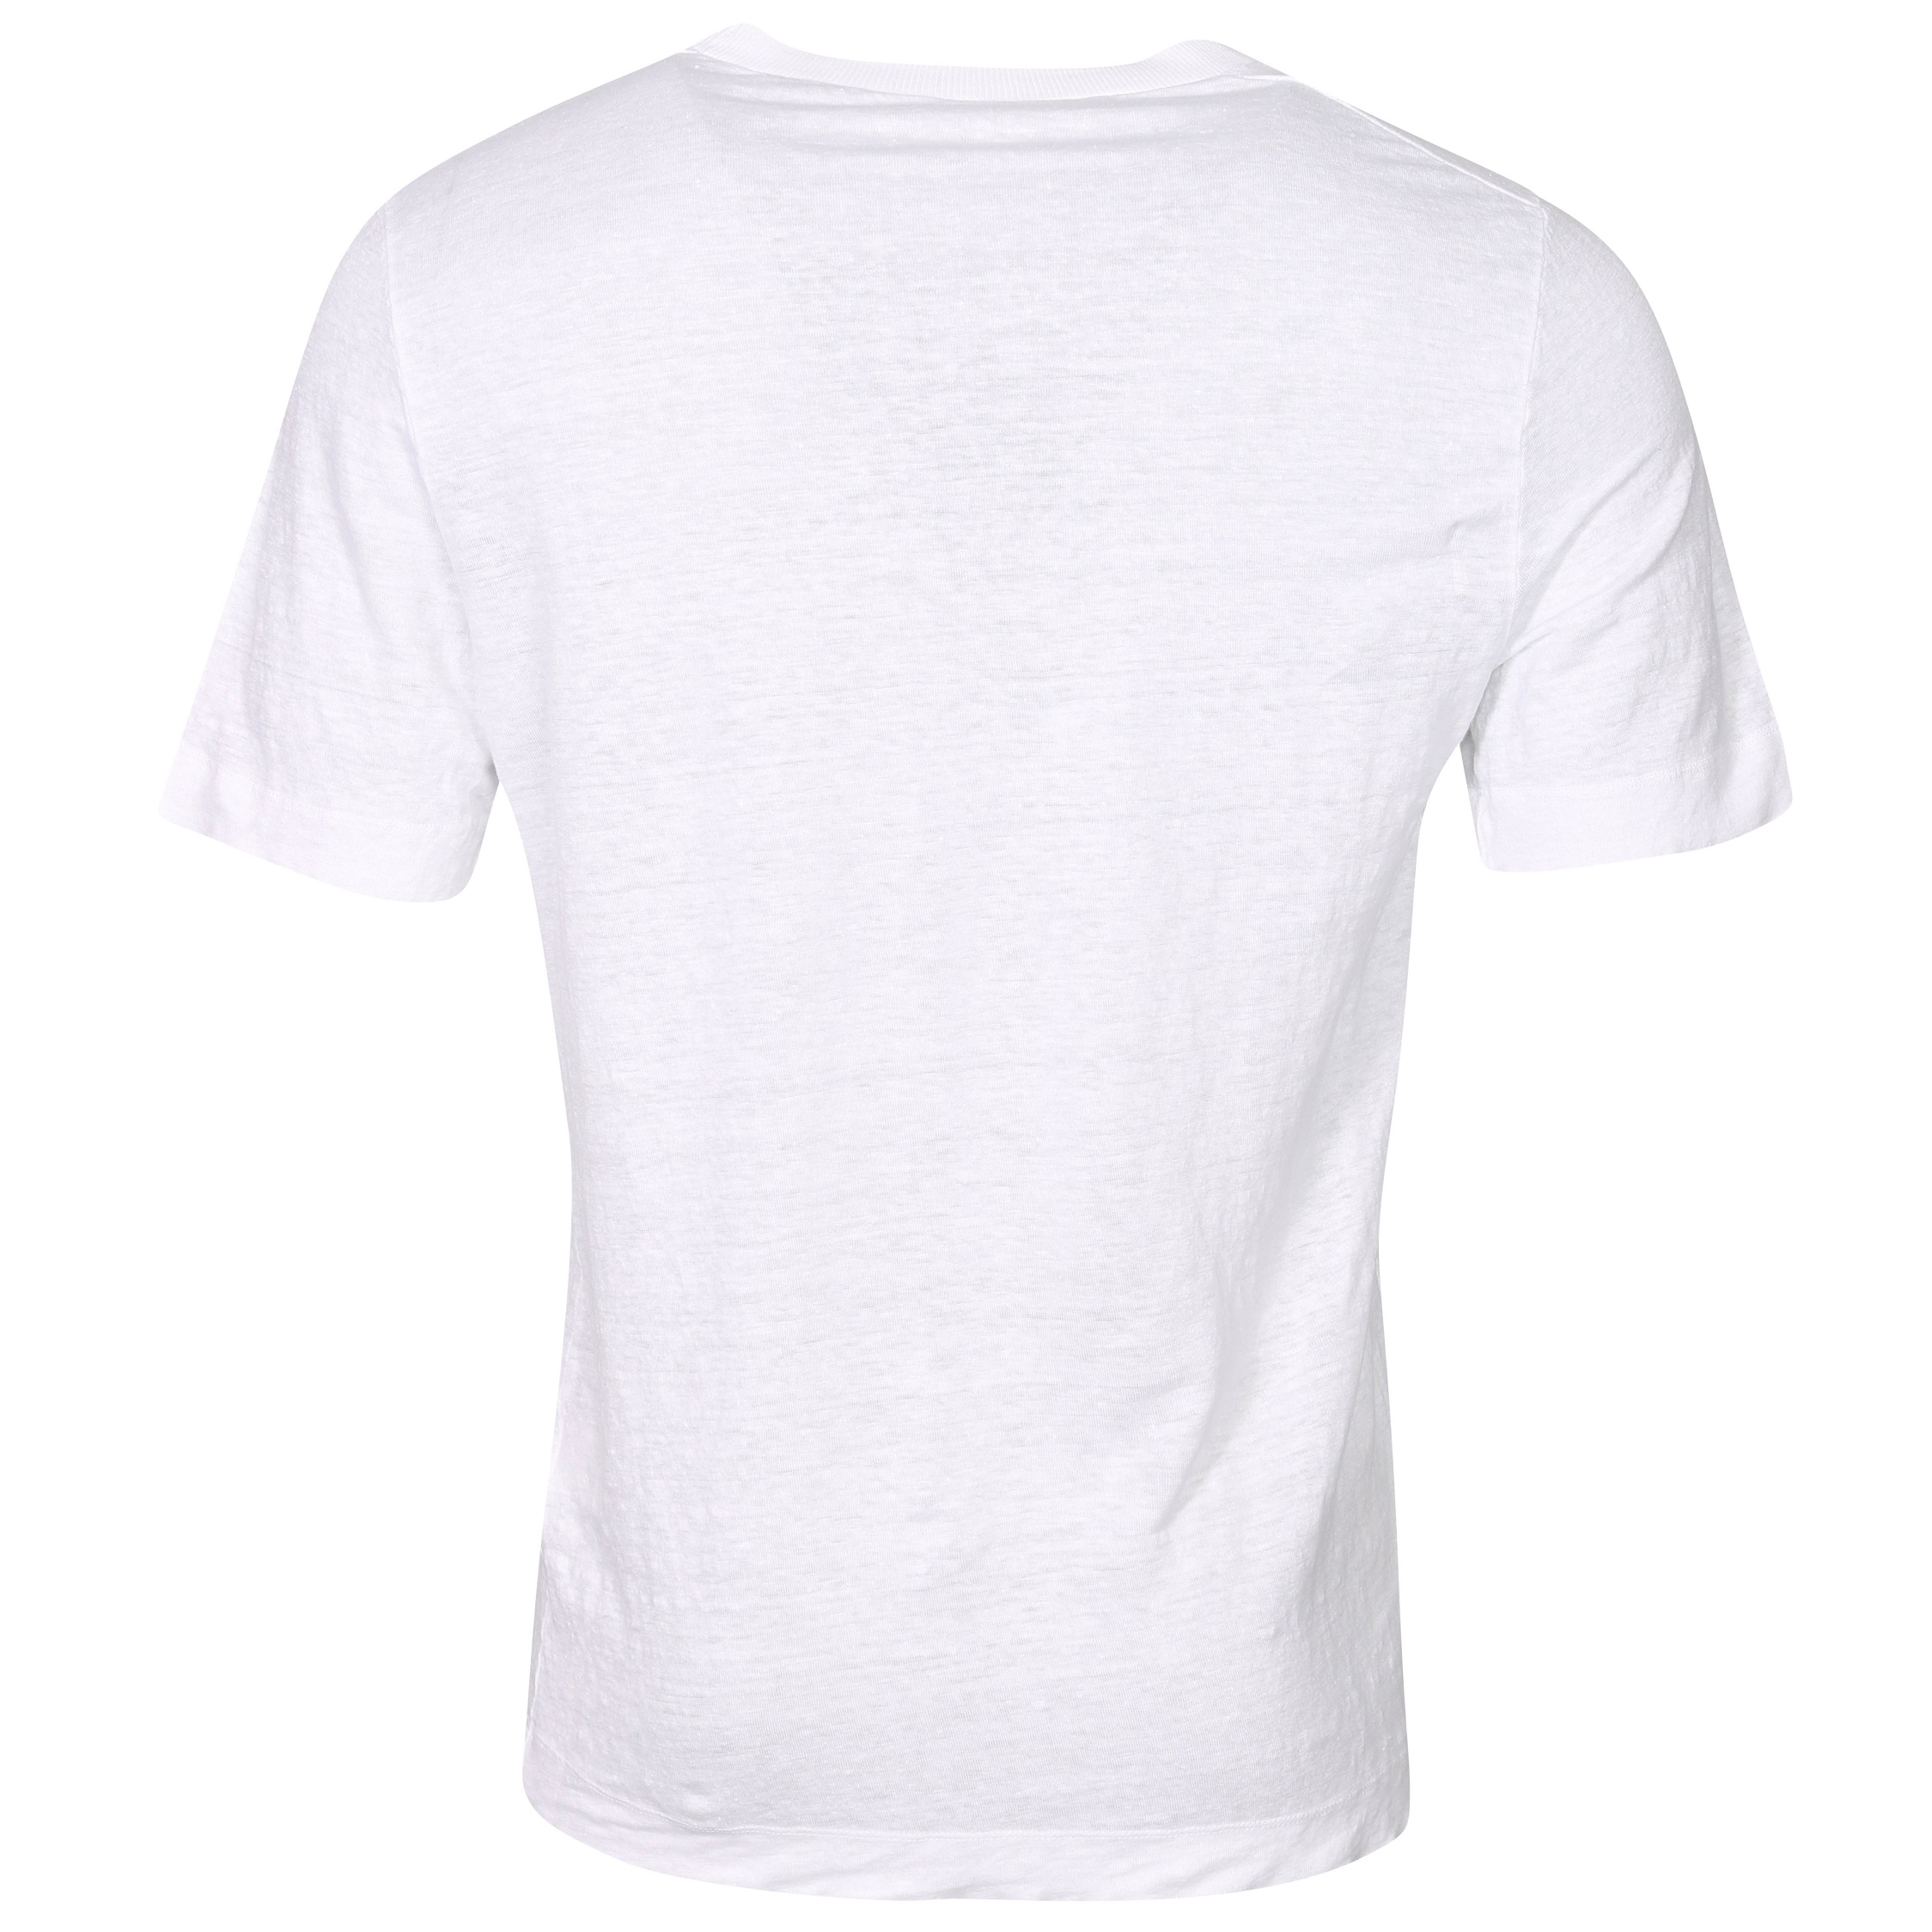 TRANSIT UOMO Hemp T-Shirt in White XL